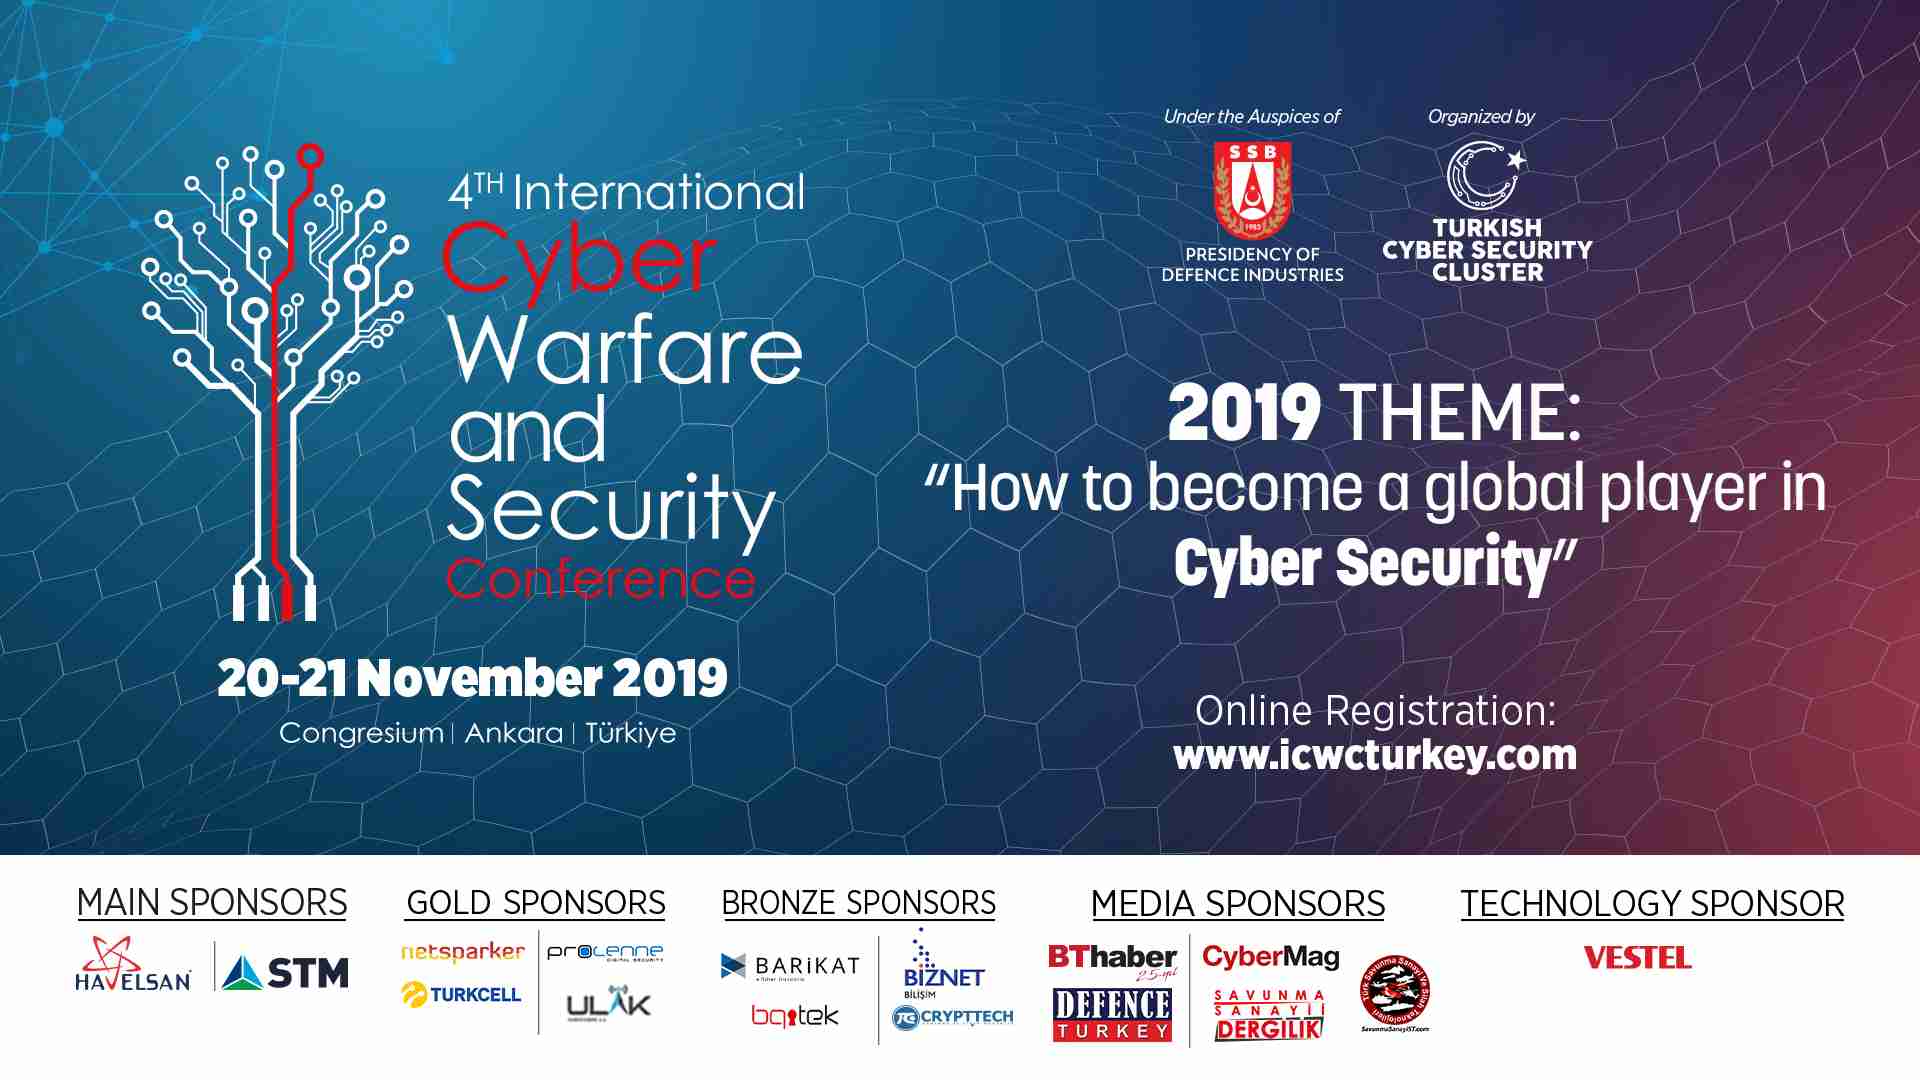 4. Siber Savaş ve Güvenlik Konferansı 20-21 Kasım’da Ankara’da